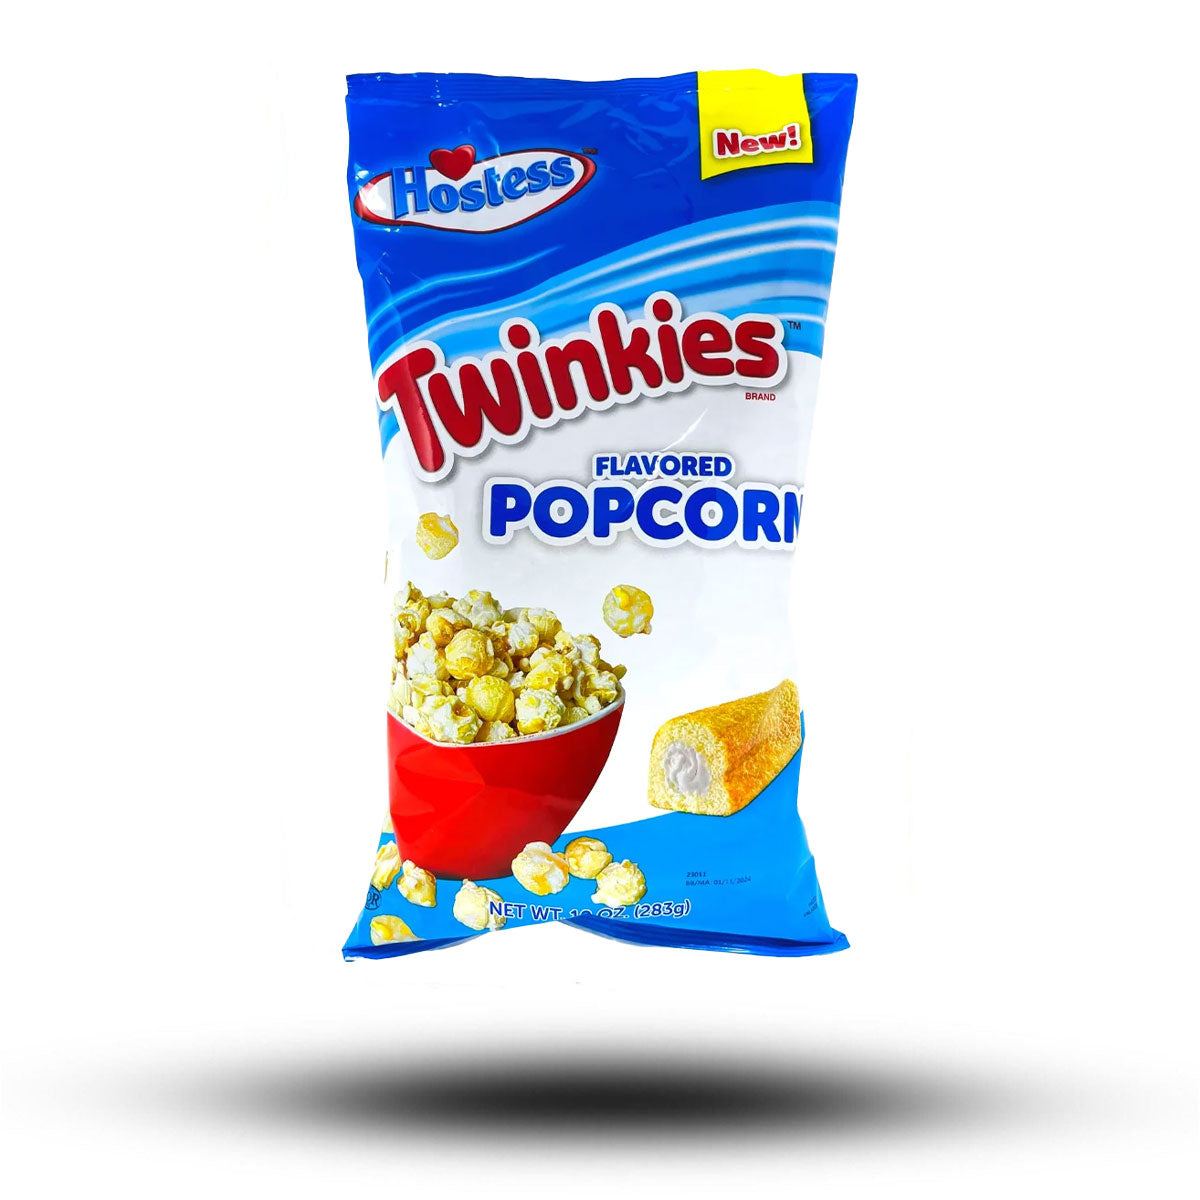 Hostess Twinkies Popcorn 283g